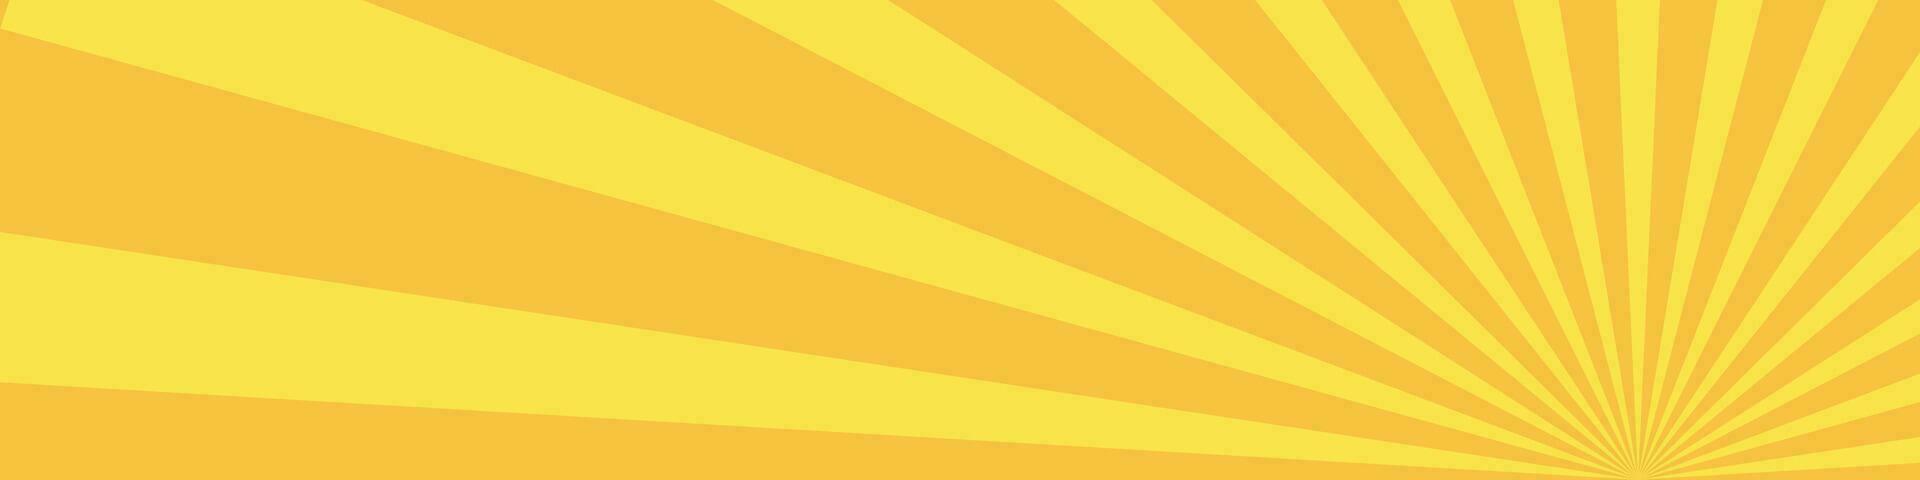 cómic rayos de sol con vibrante amarillo Dom vigas radiante popular Arte modelo enfatizando naranja ligero. antecedentes presentando radial rayos y haz detalles. plano ilustración vector